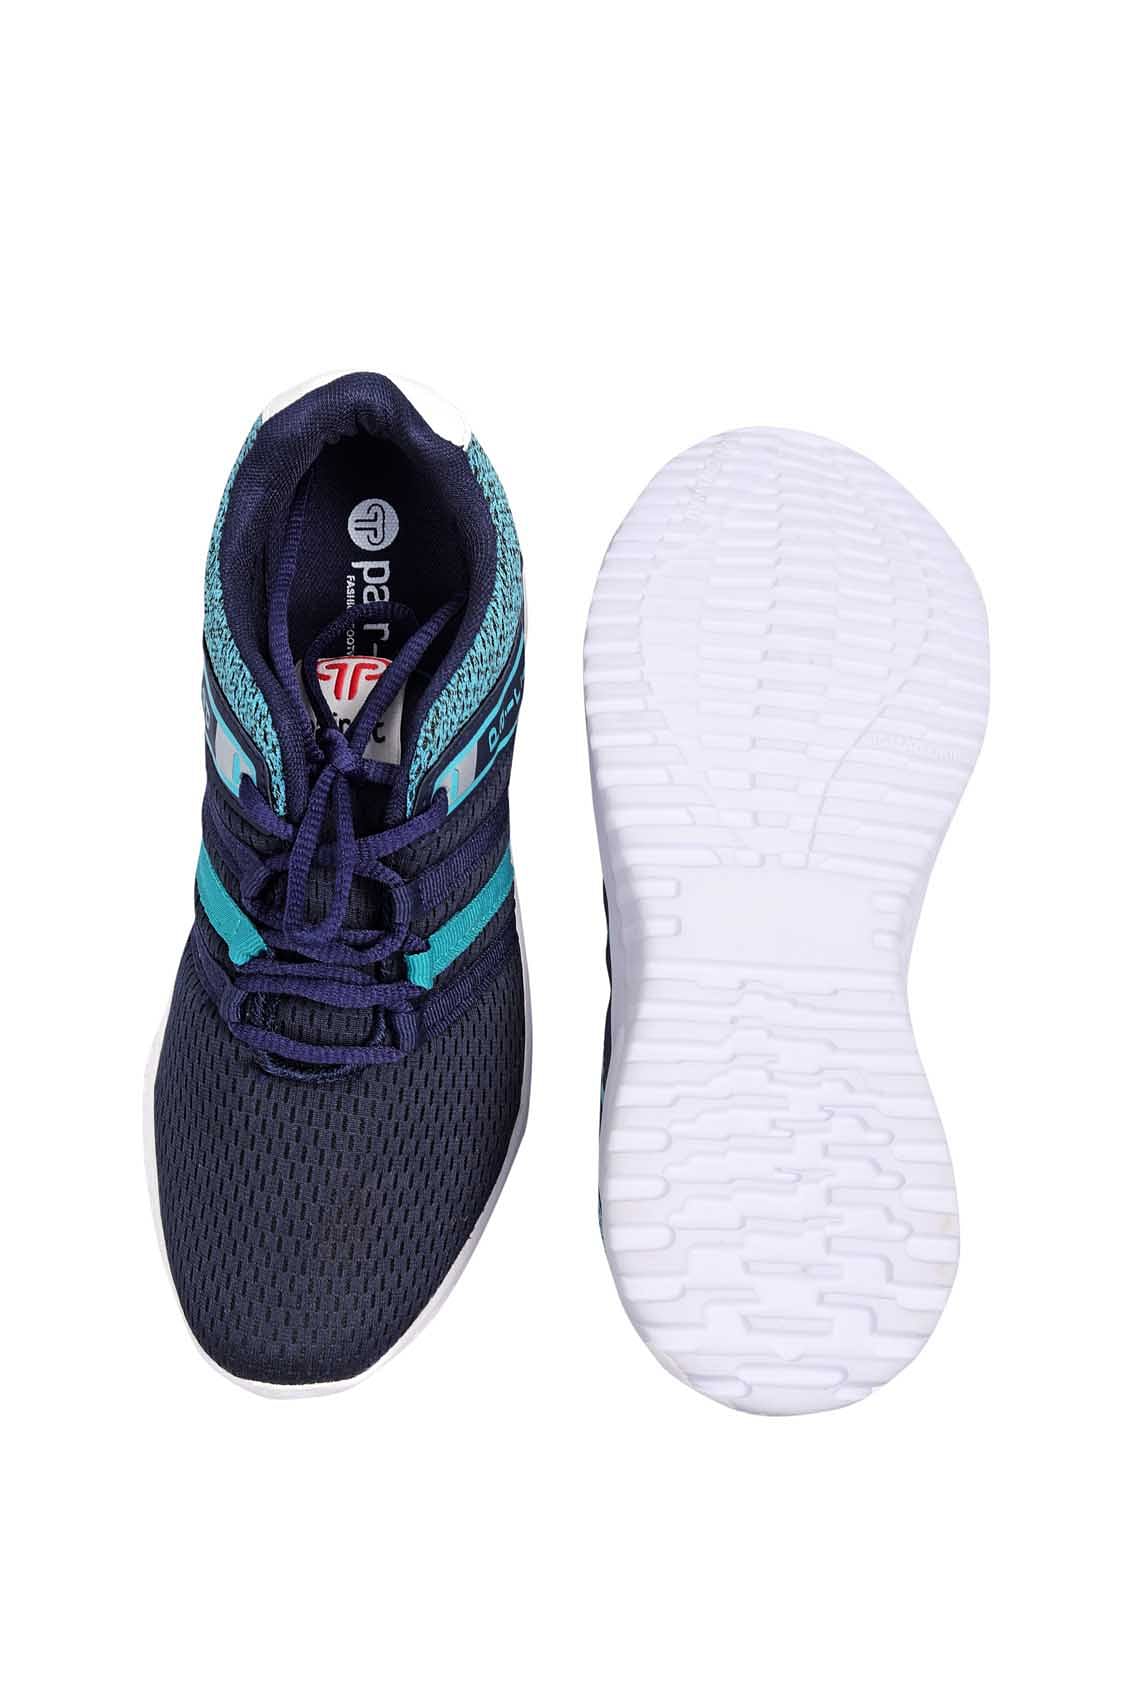 Pair-it Men's Sports Shoes - Black-IT-Presto011